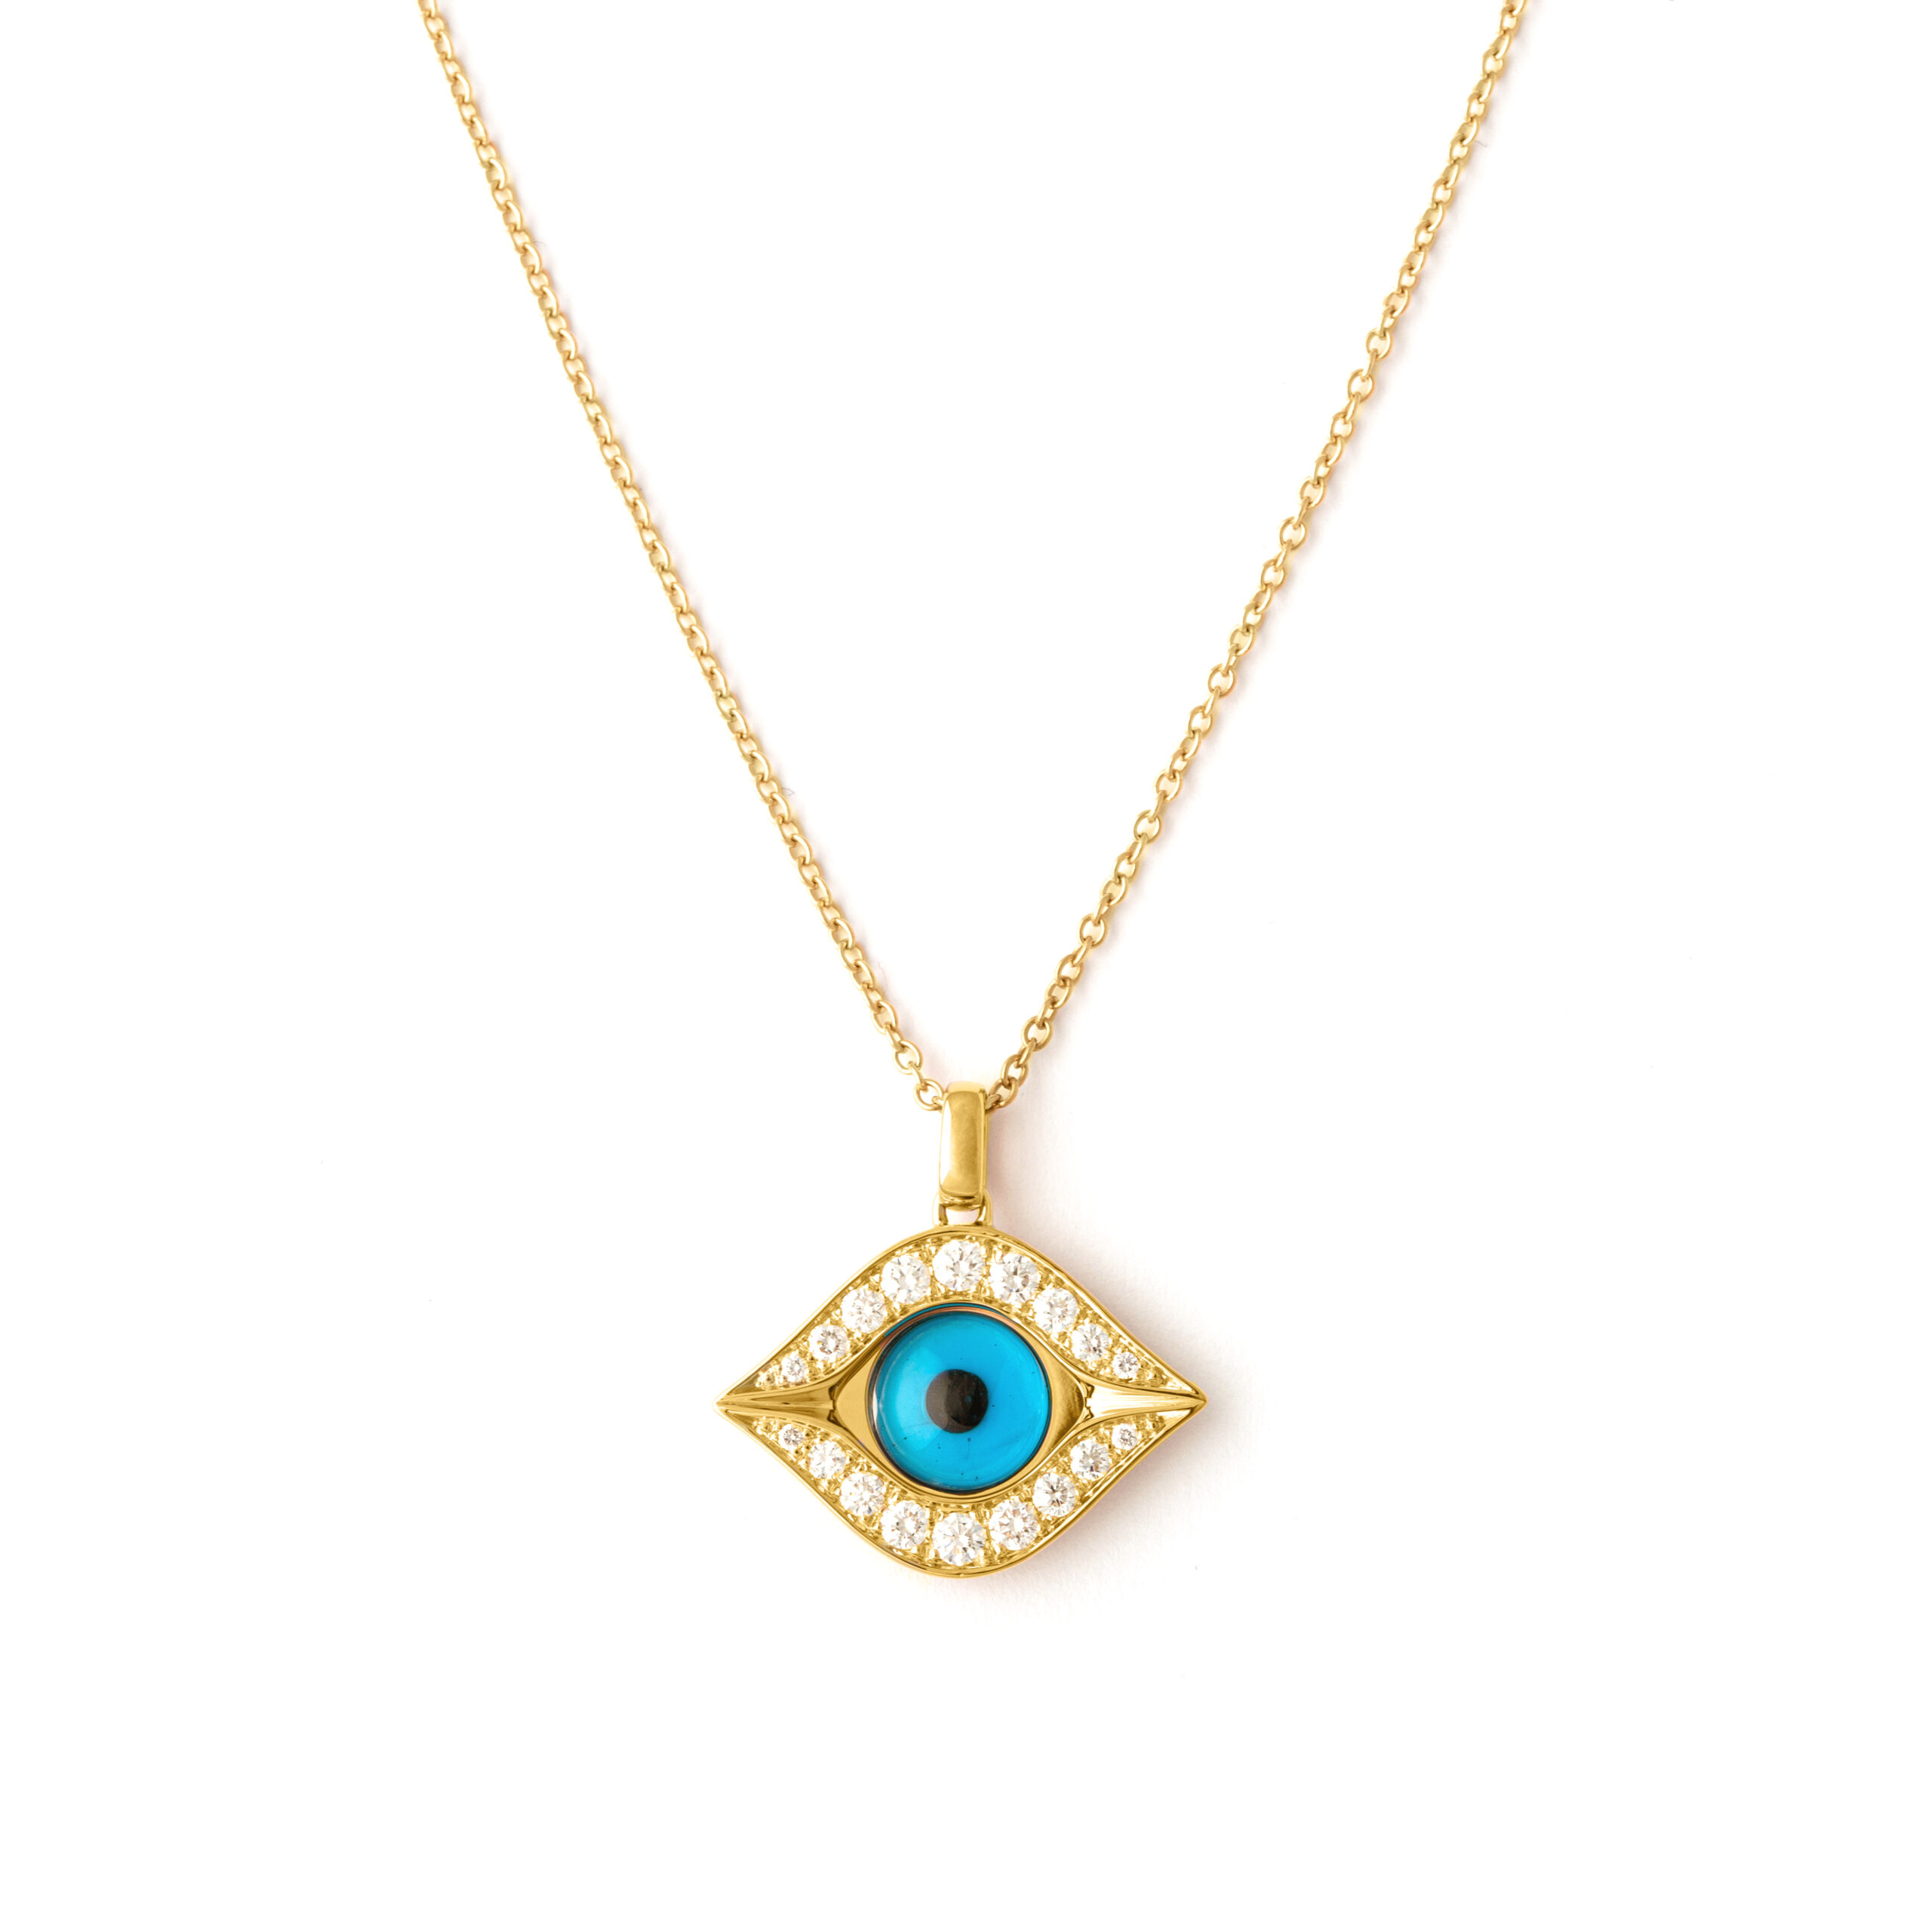 20l767_1-diamonds-necklace-eye-yellow-gold-18k-pendant